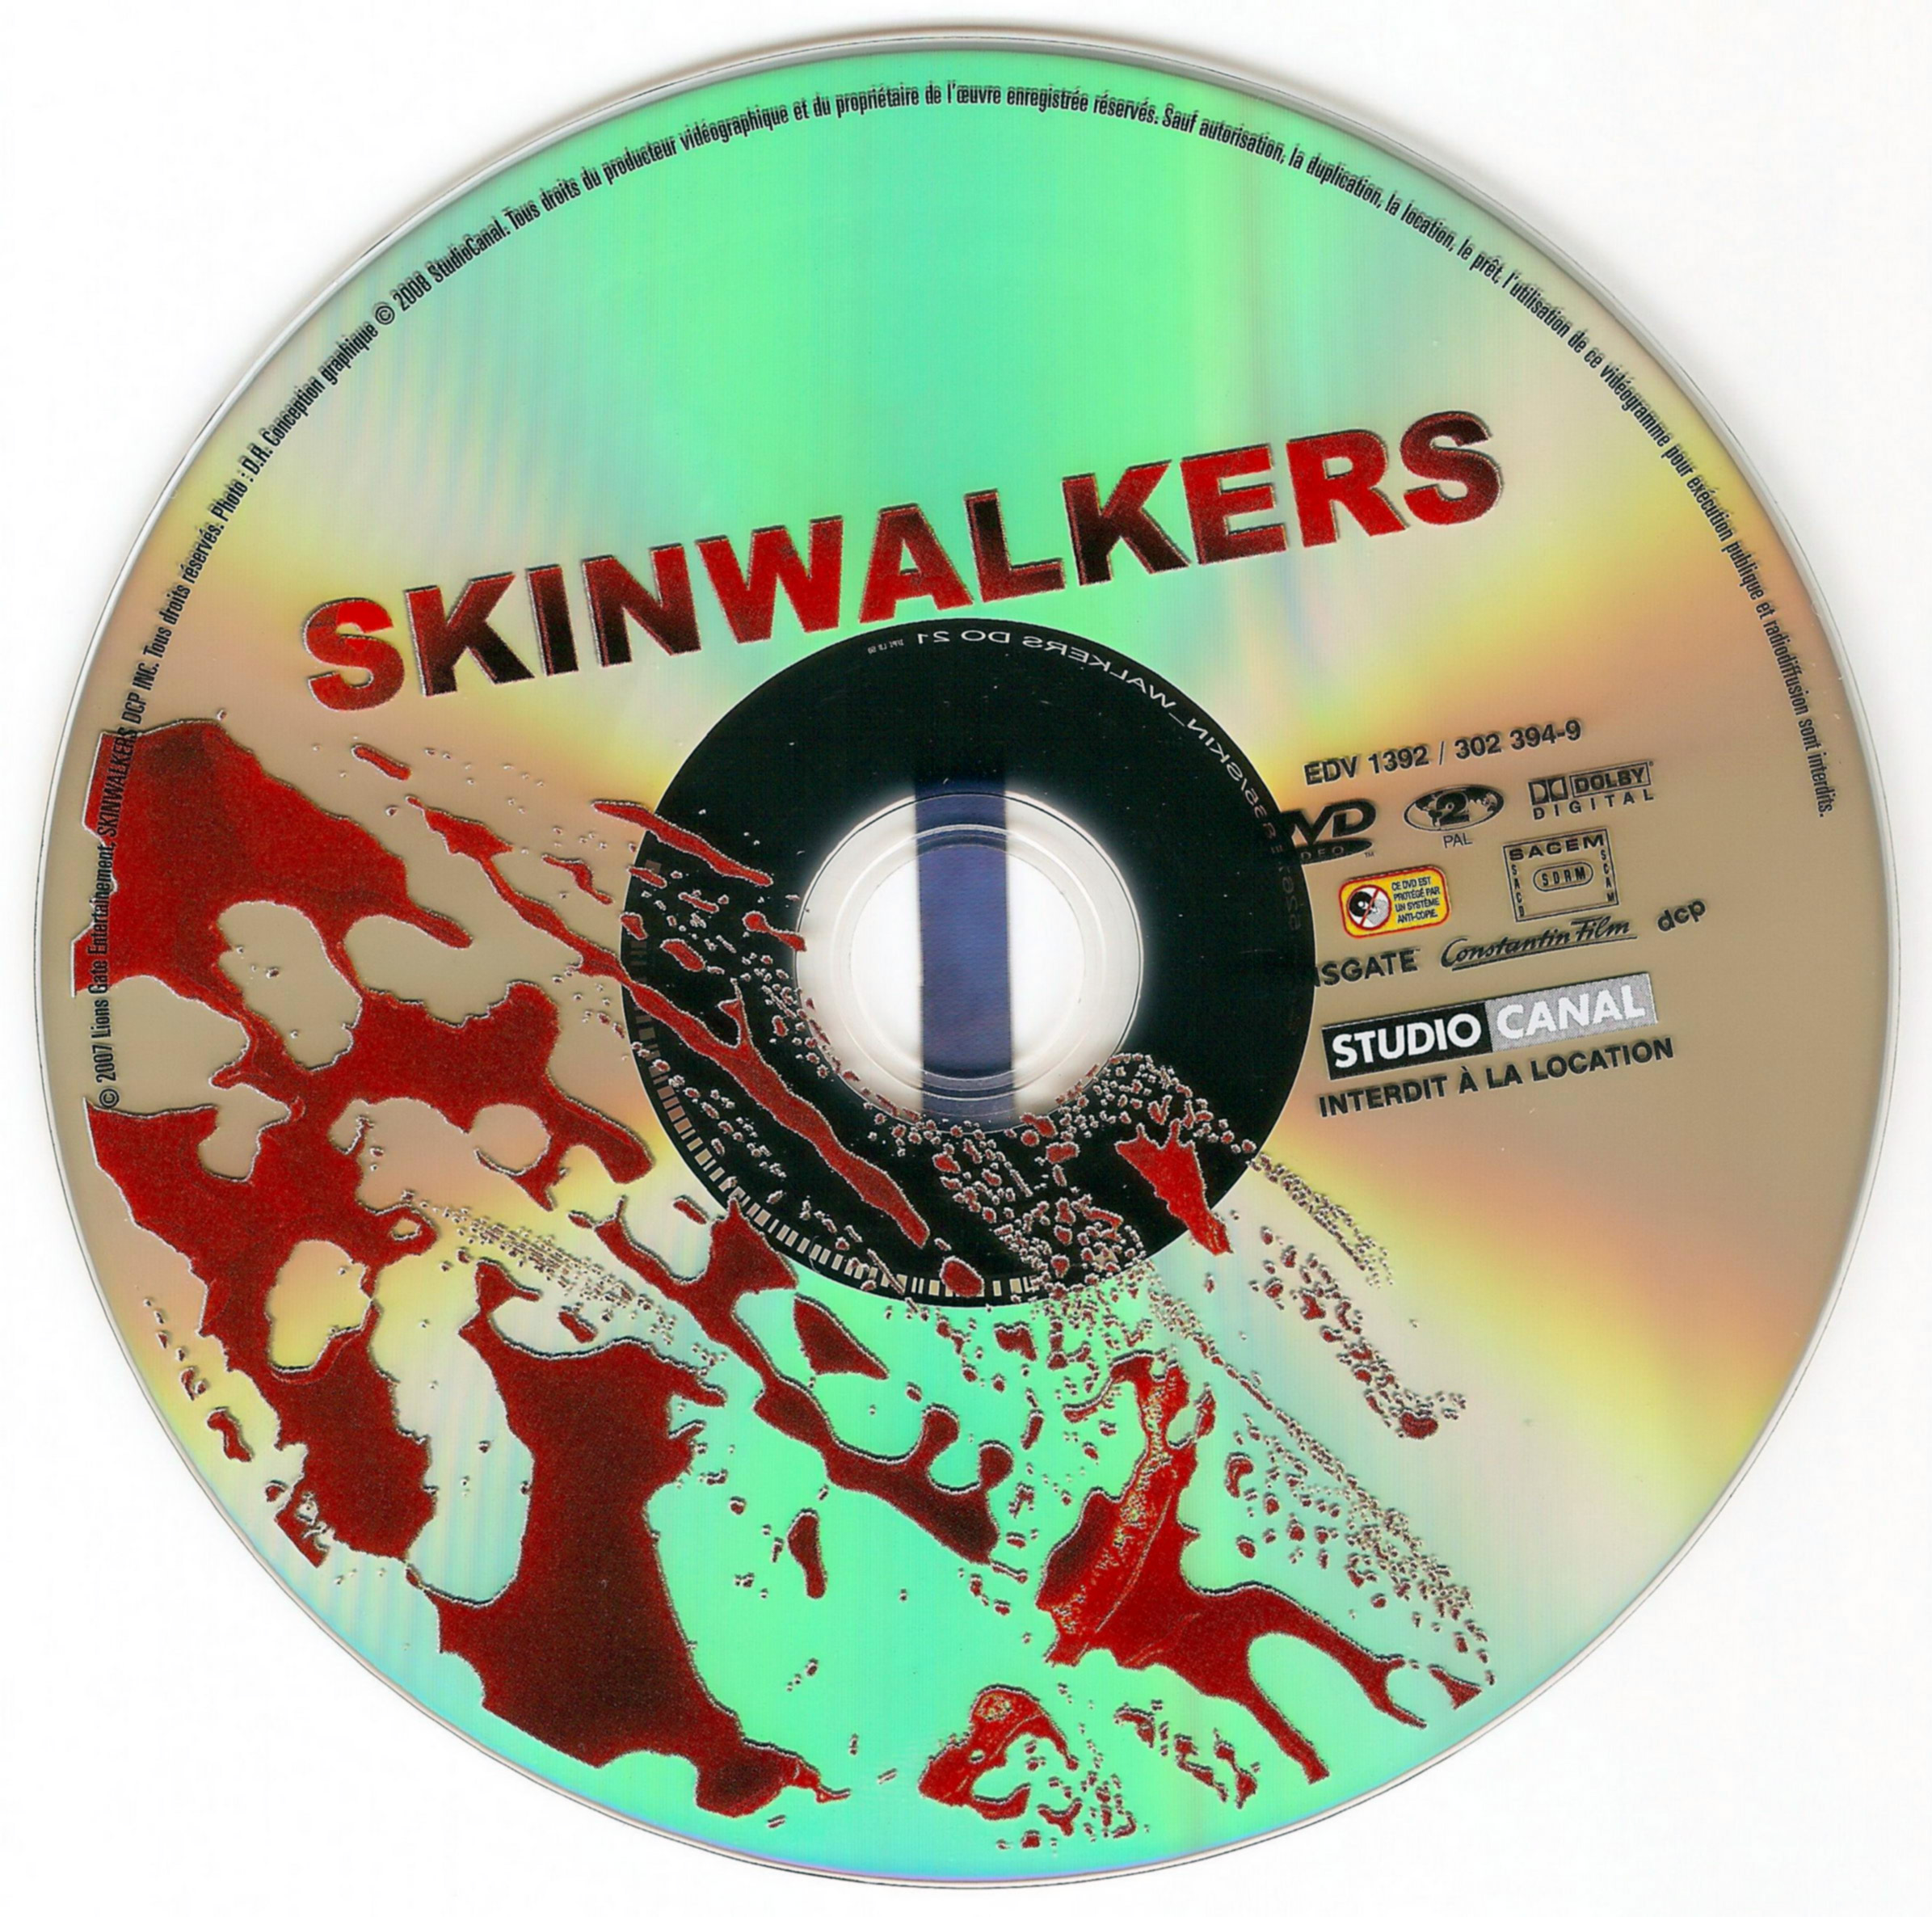 Skin walkers